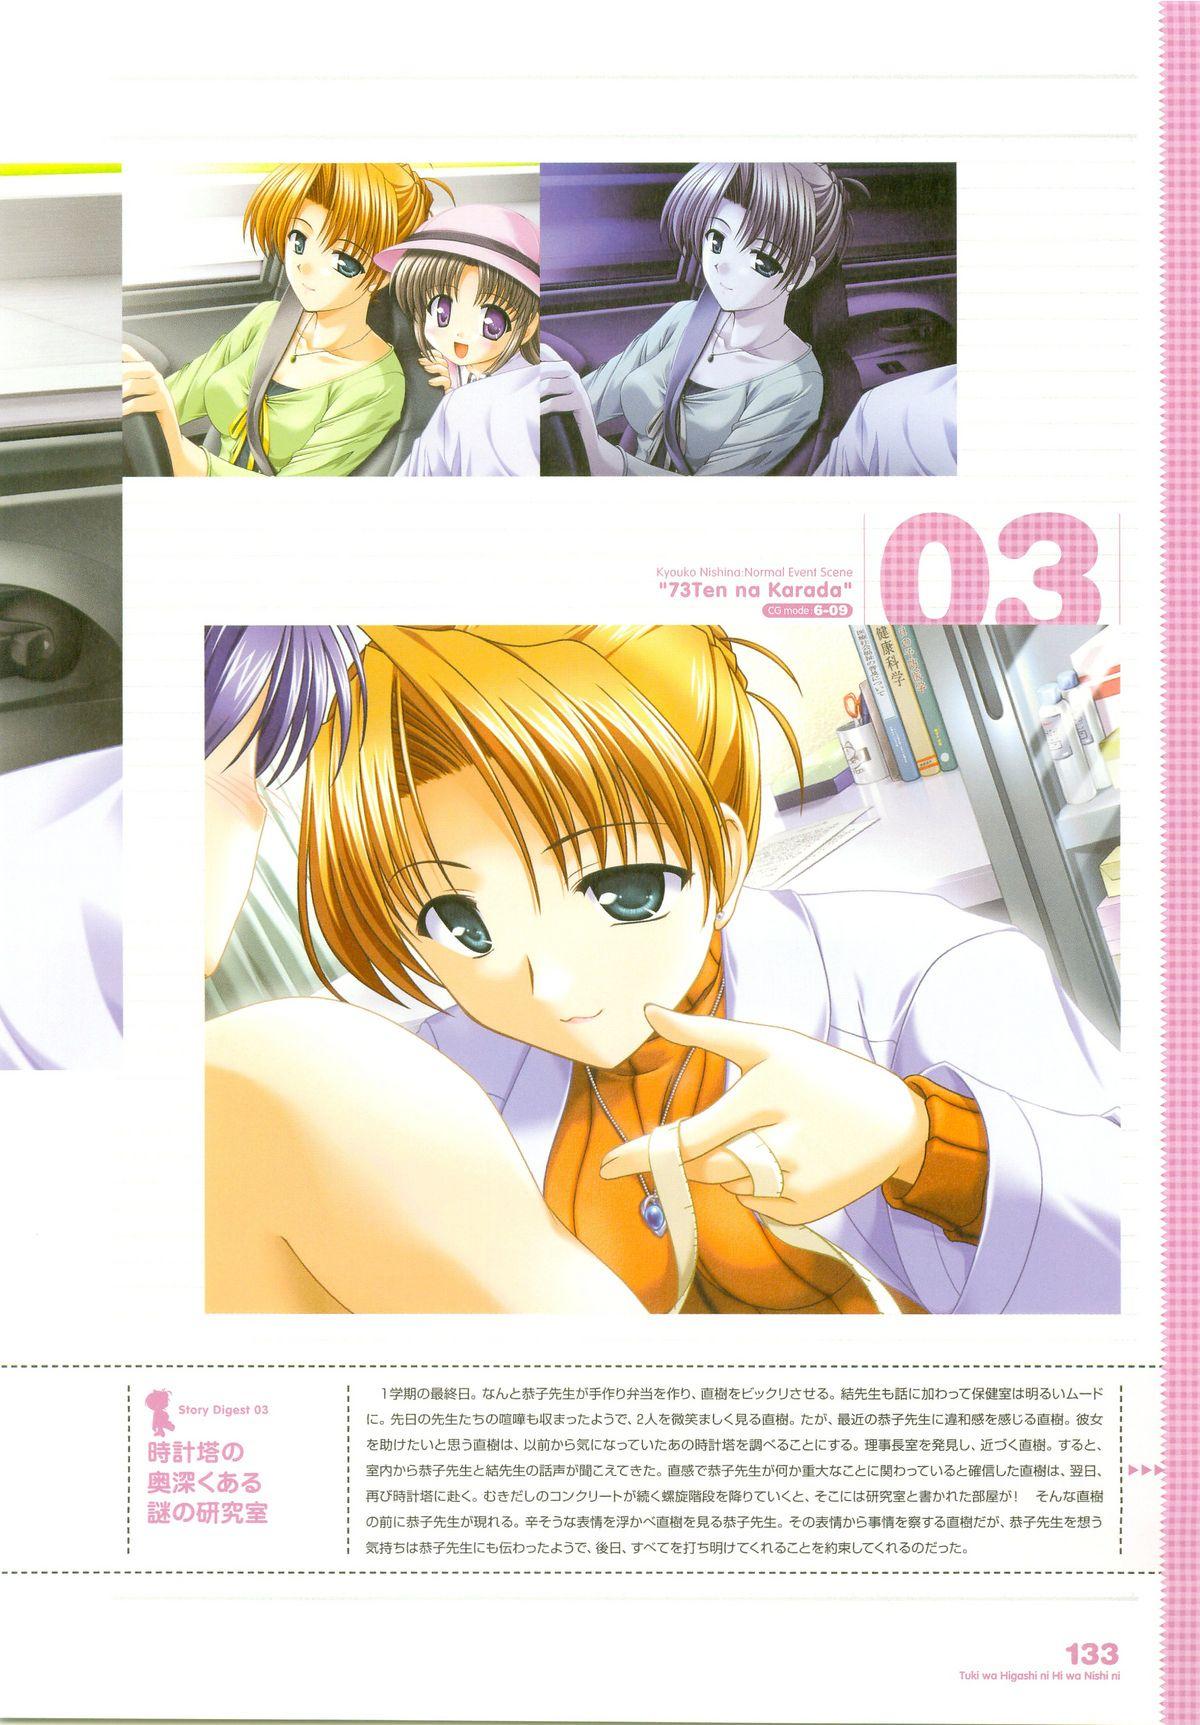 Tsuki wa Higashi ni Hi wa Nishi ni ～ Operation Sanctuary ～ Visual Fan Book 165